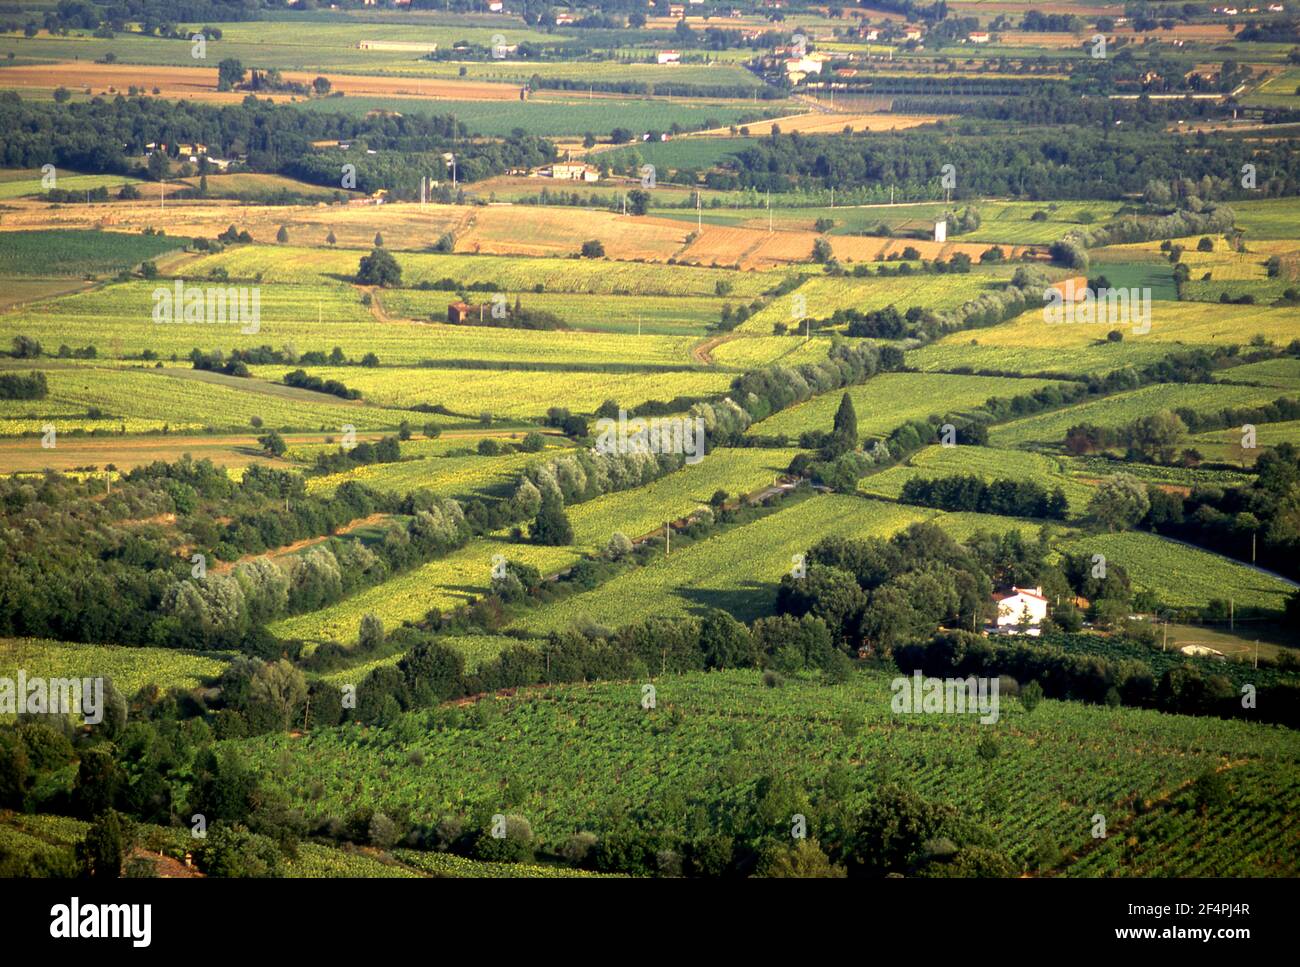 Fertile farmland in the Valdarno region of Tuscany, Italy Stock Photo